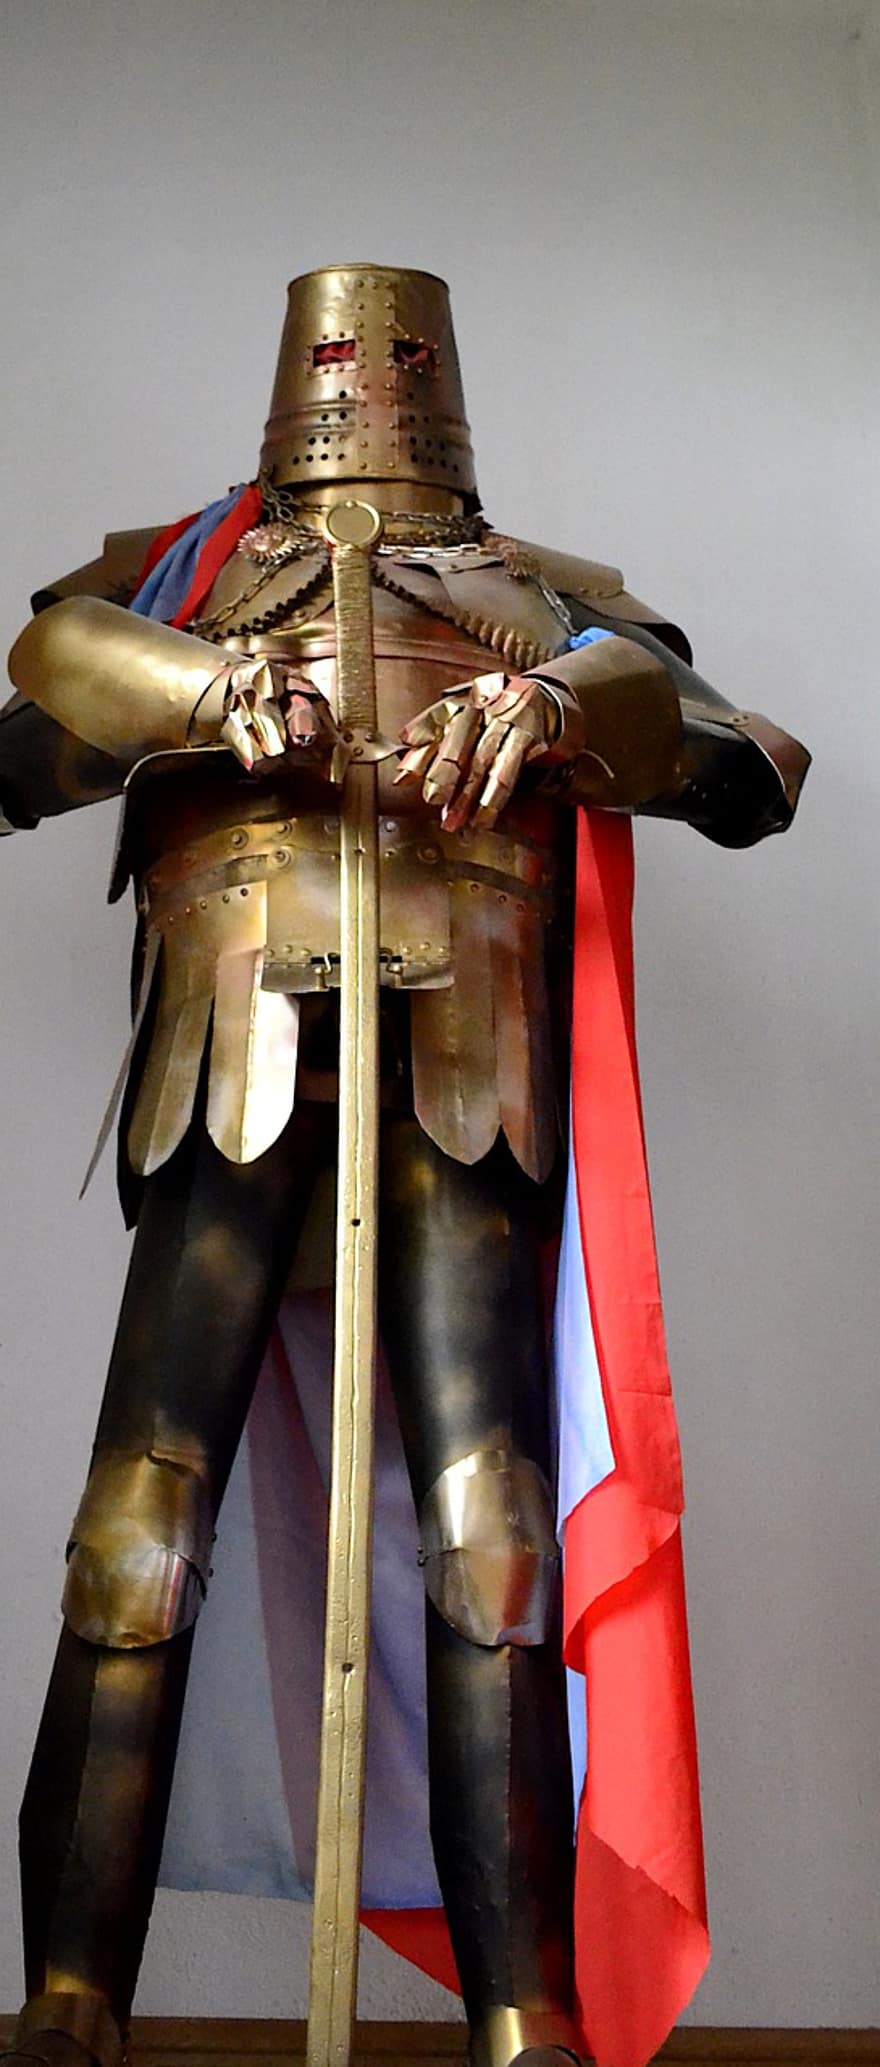 şövalye, zırh, kılıç, çelik, kask, göğüs plakası, pelerin